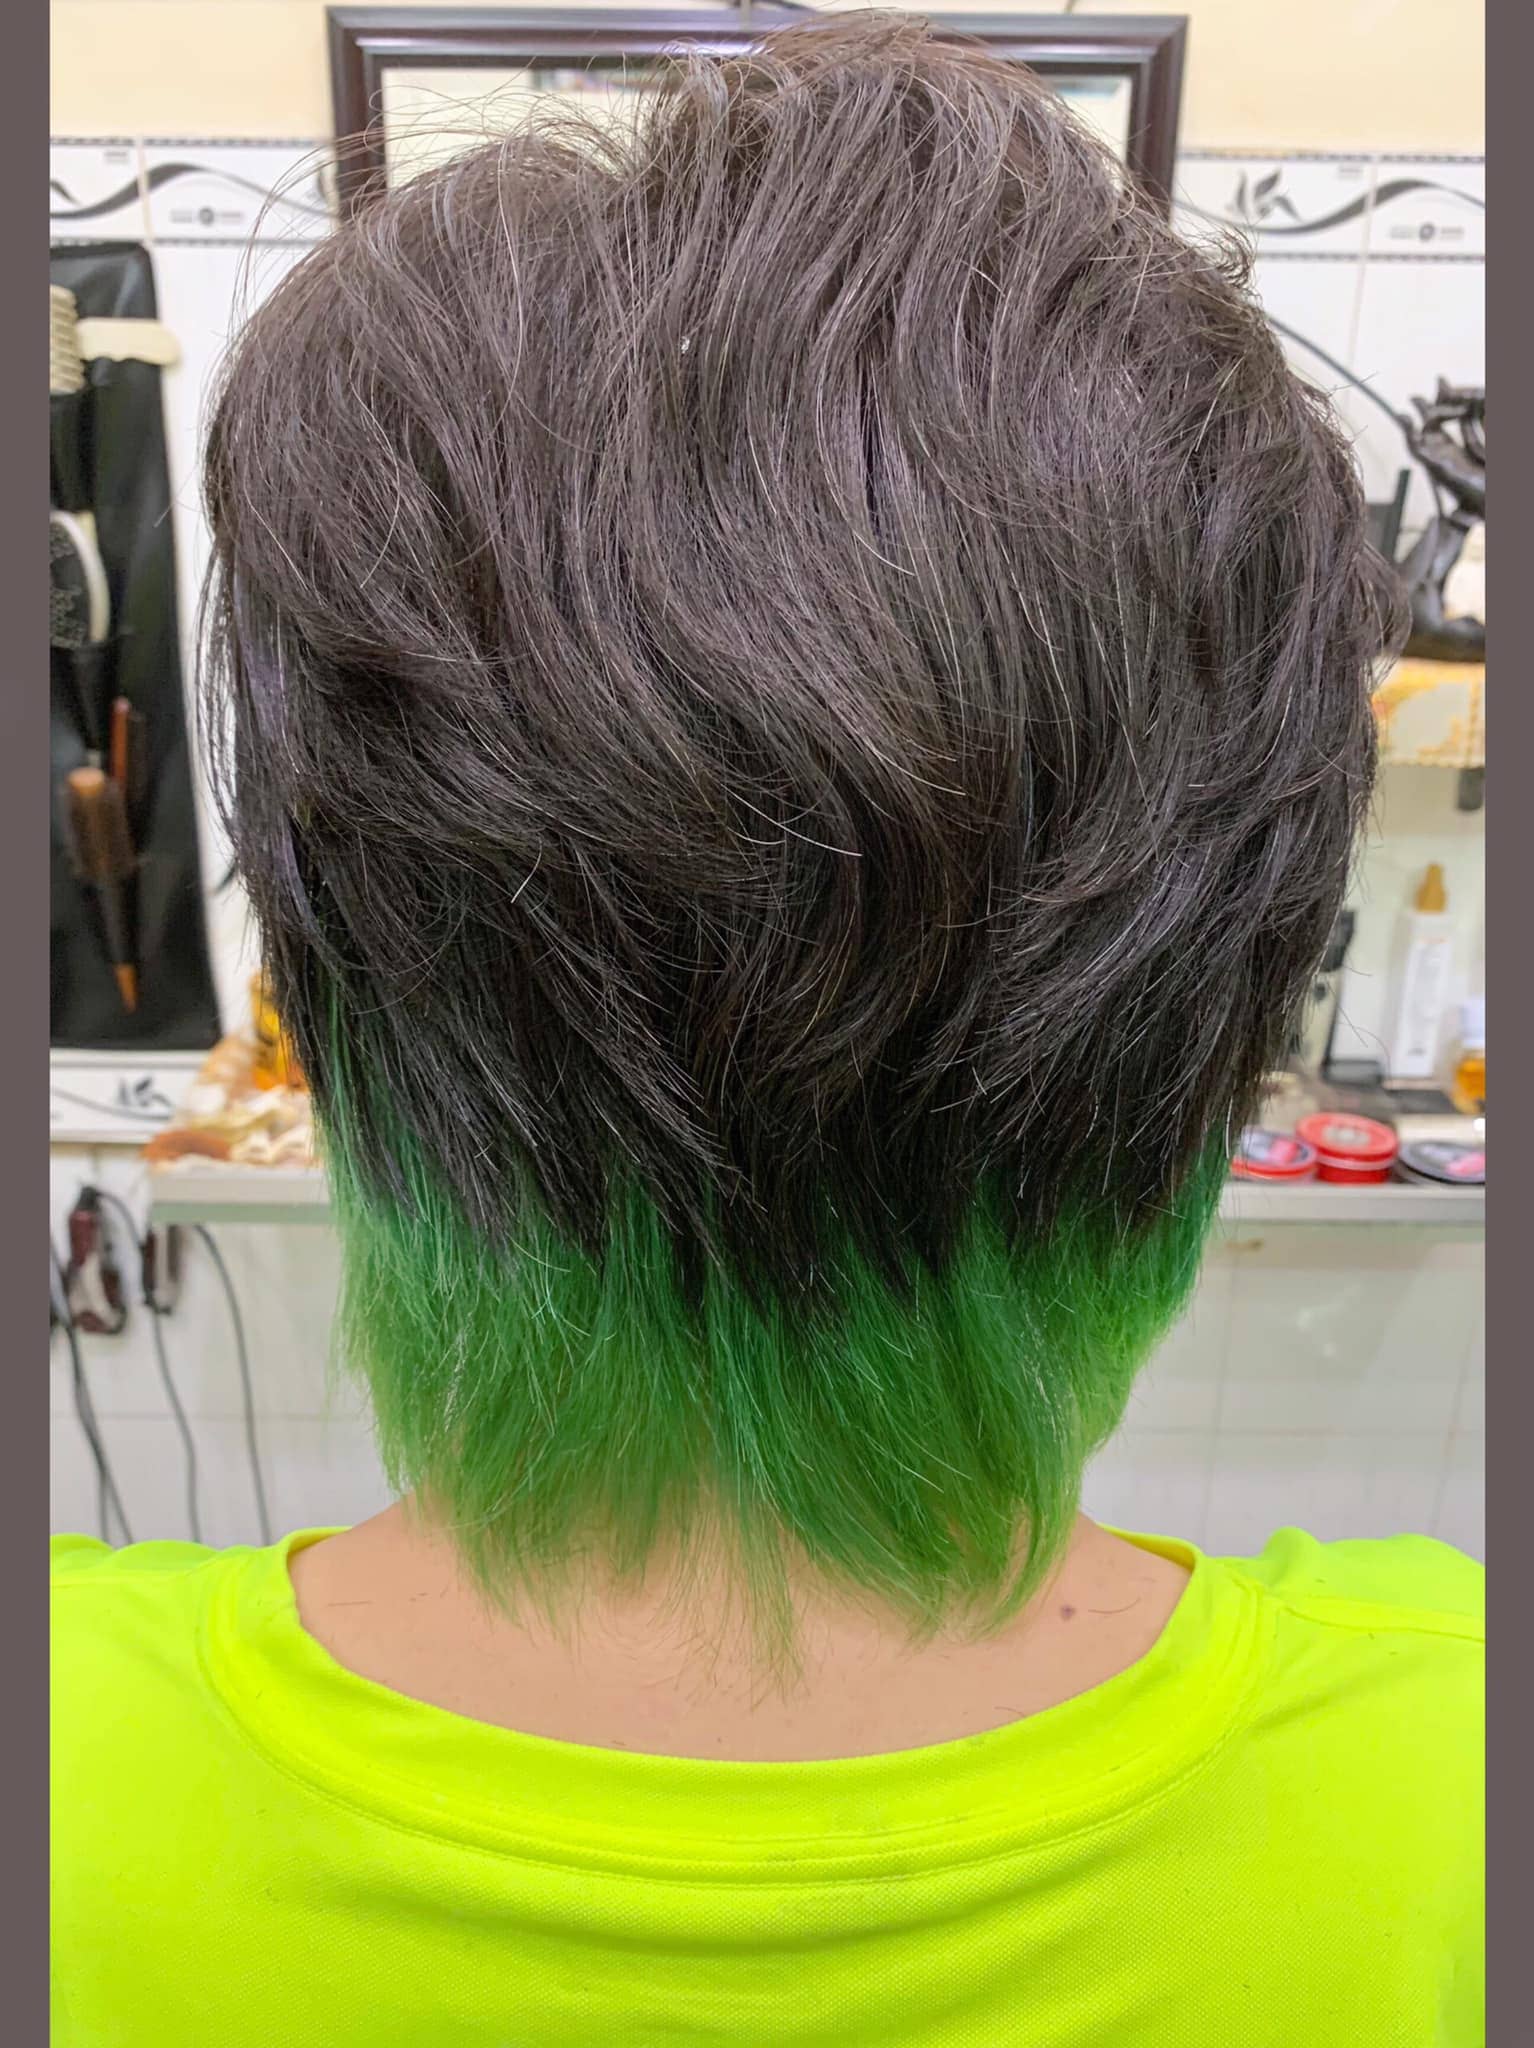 Lee Ngô Hair Salon